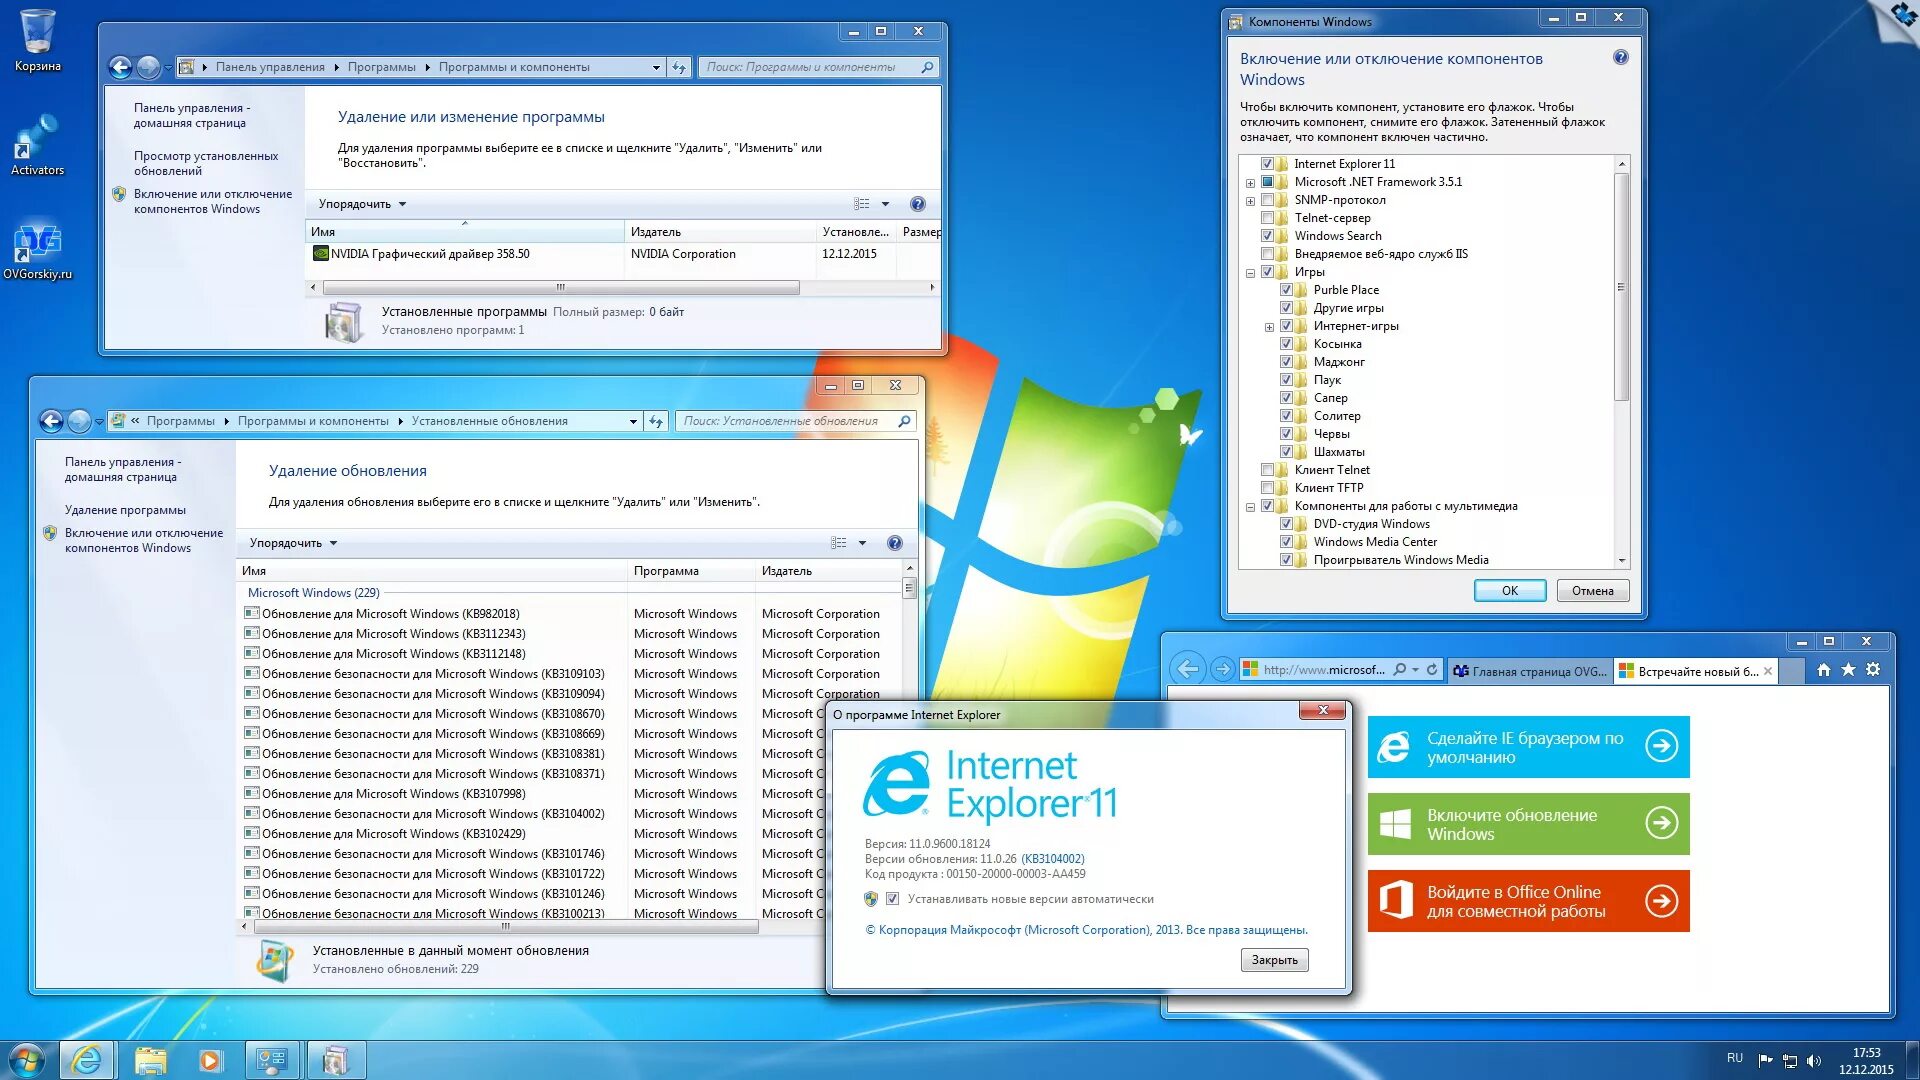 Kb2670838 x64. Установка Windows 7 Ultimate. Виндовс 7 максимальная программы. Установка компонентов виндовс. Windows 7 Ultimate x32 сборки.